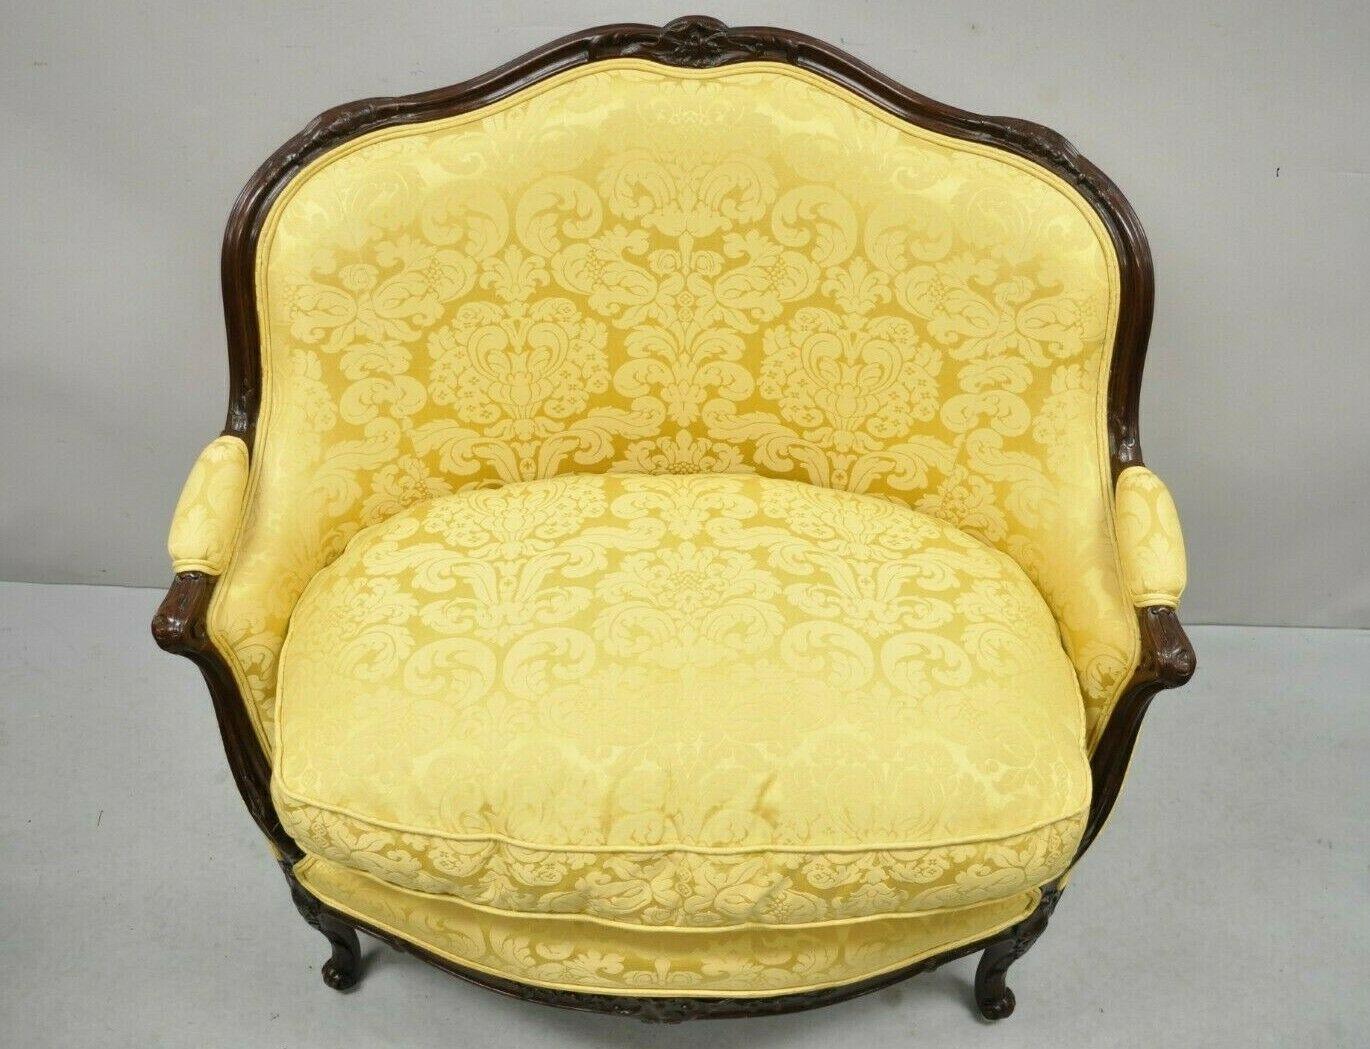 Französisch Louis XV Stil Gold gepolstert breiten Sitz Lounge-Sessel Settee Bergere. Artikel verfügt über eine einzigartige breite Sitzfläche, Gold Blumendruck Stoff, Massivholzrahmen, schöne Holzmaserung, Cabriole Beine, sehr schöne Vintage